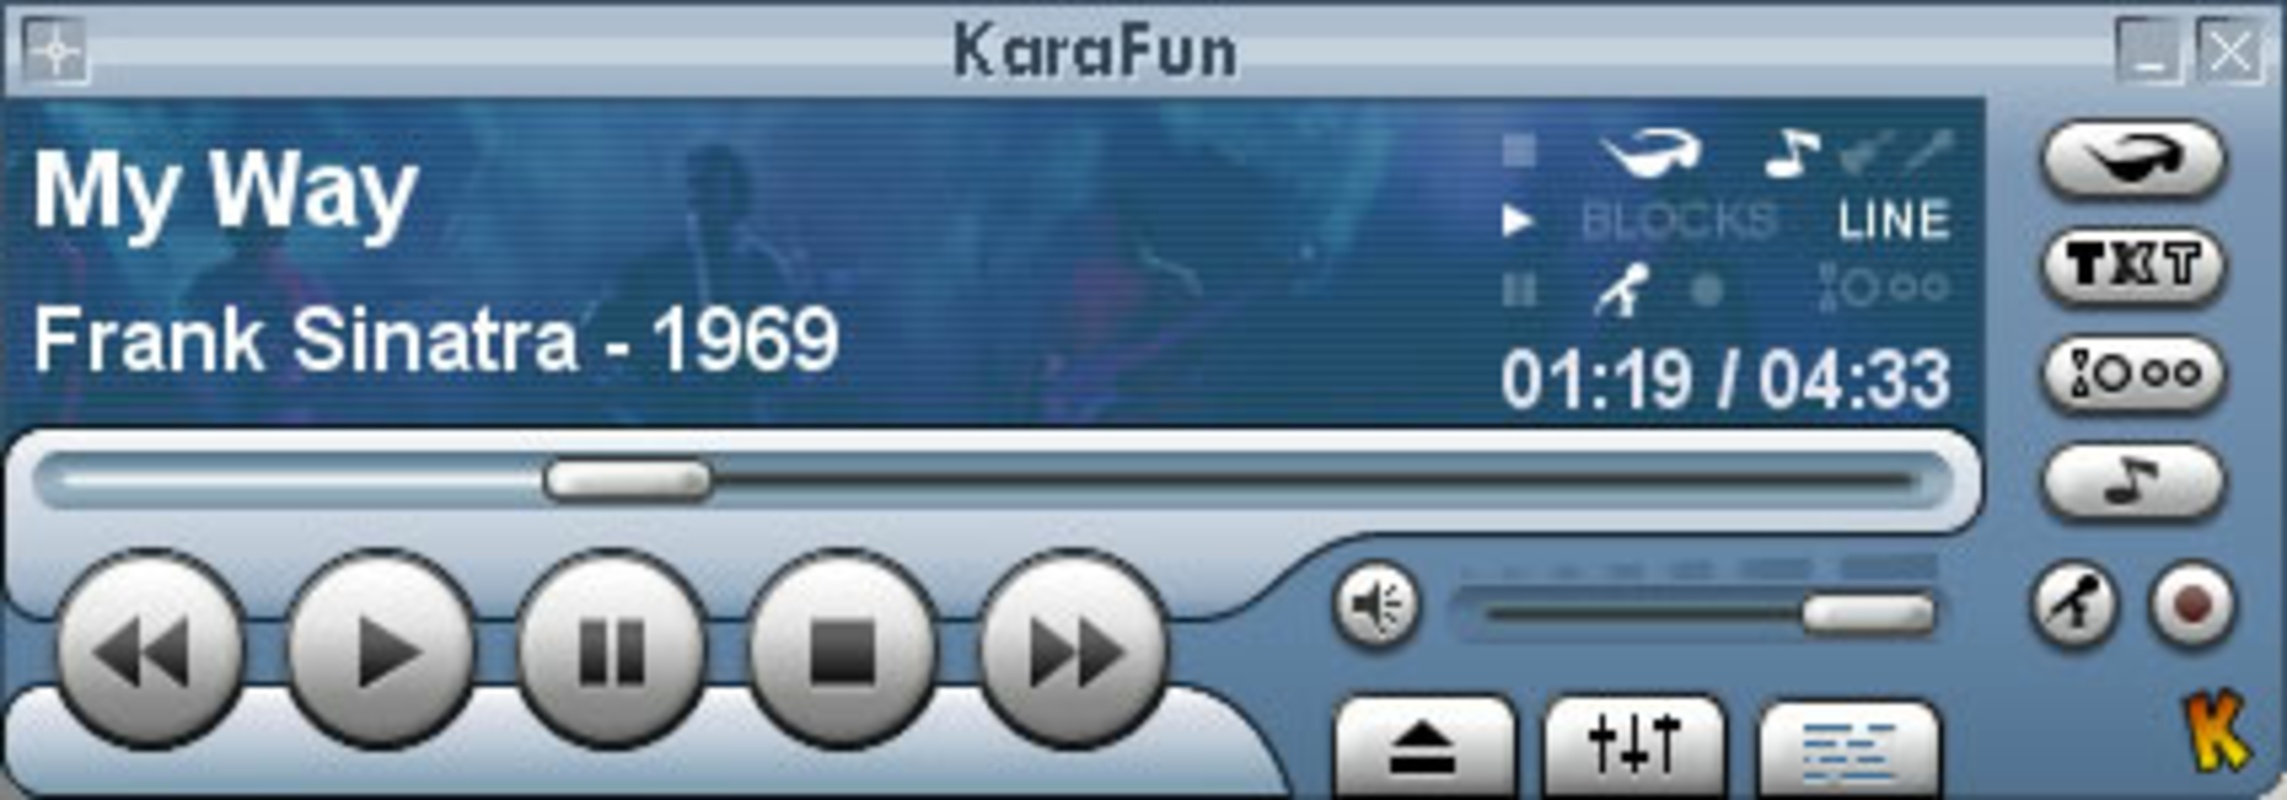 KaraFun 2.6.2.0 for Windows Screenshot 1